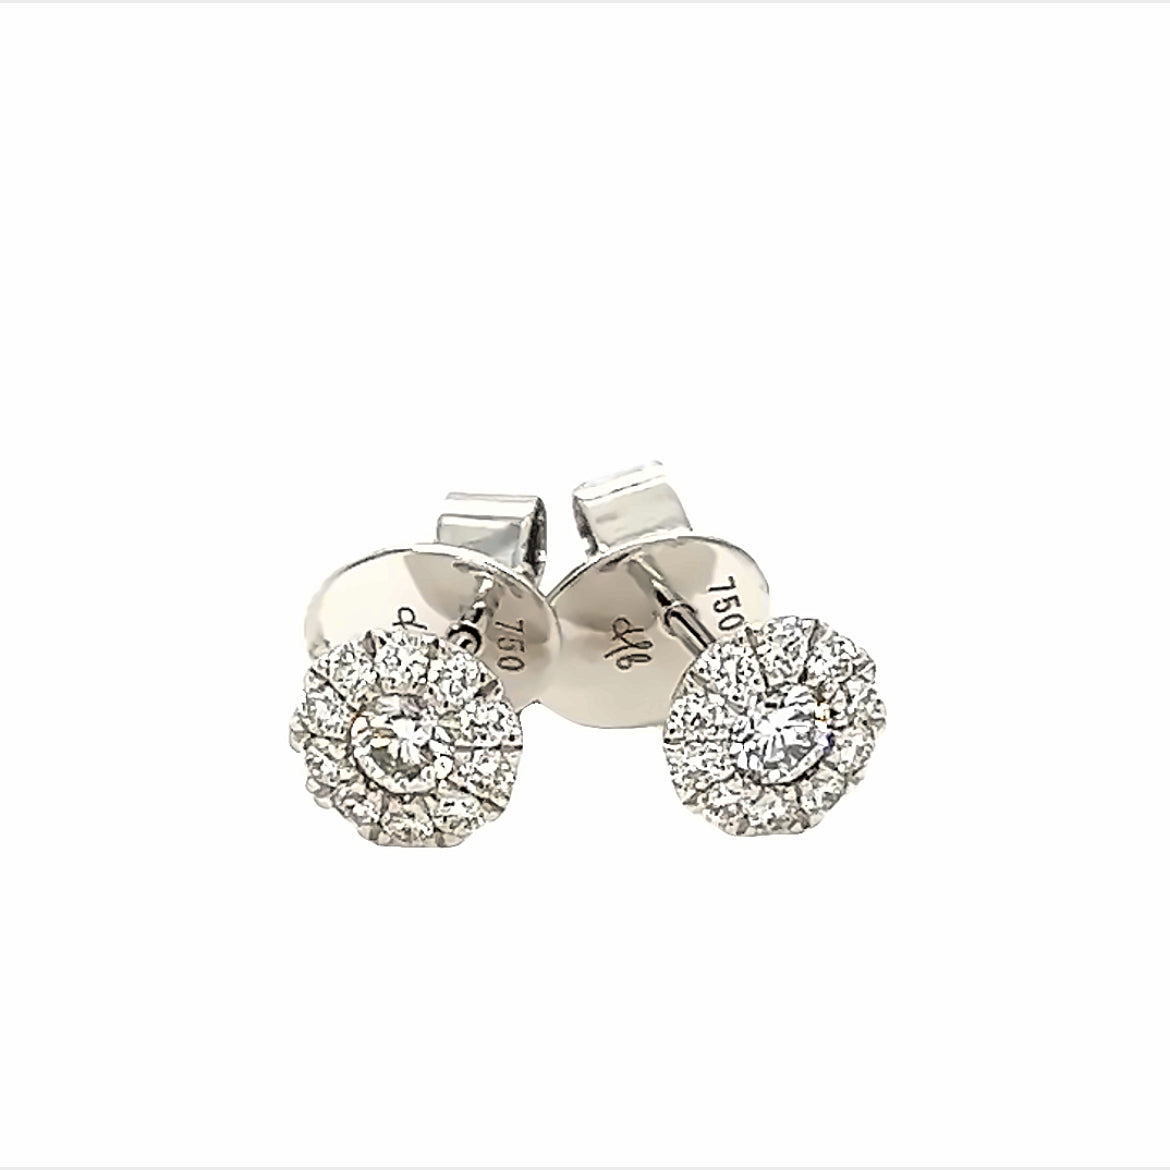 Colori Earrings in 18k White Gold with Diamonds - Orsini Jewellers